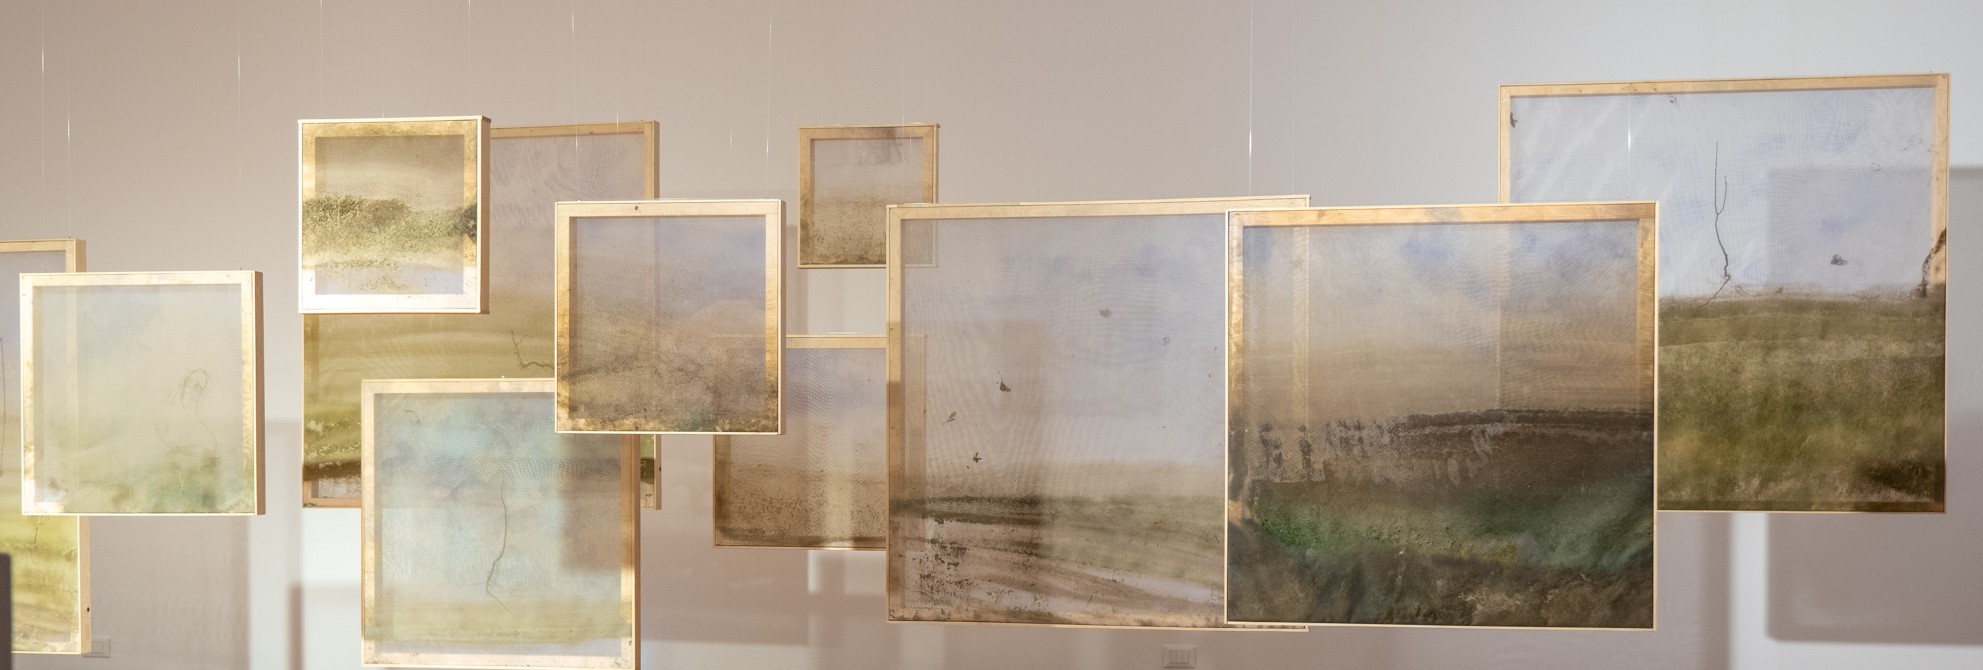 Al momento stai visualizzando Mostra di Roberto Ghezzi “Naturografie: Ăquae” allo spazio espositivo Make di Udine. Inaugurazione giovedì 14 aprile